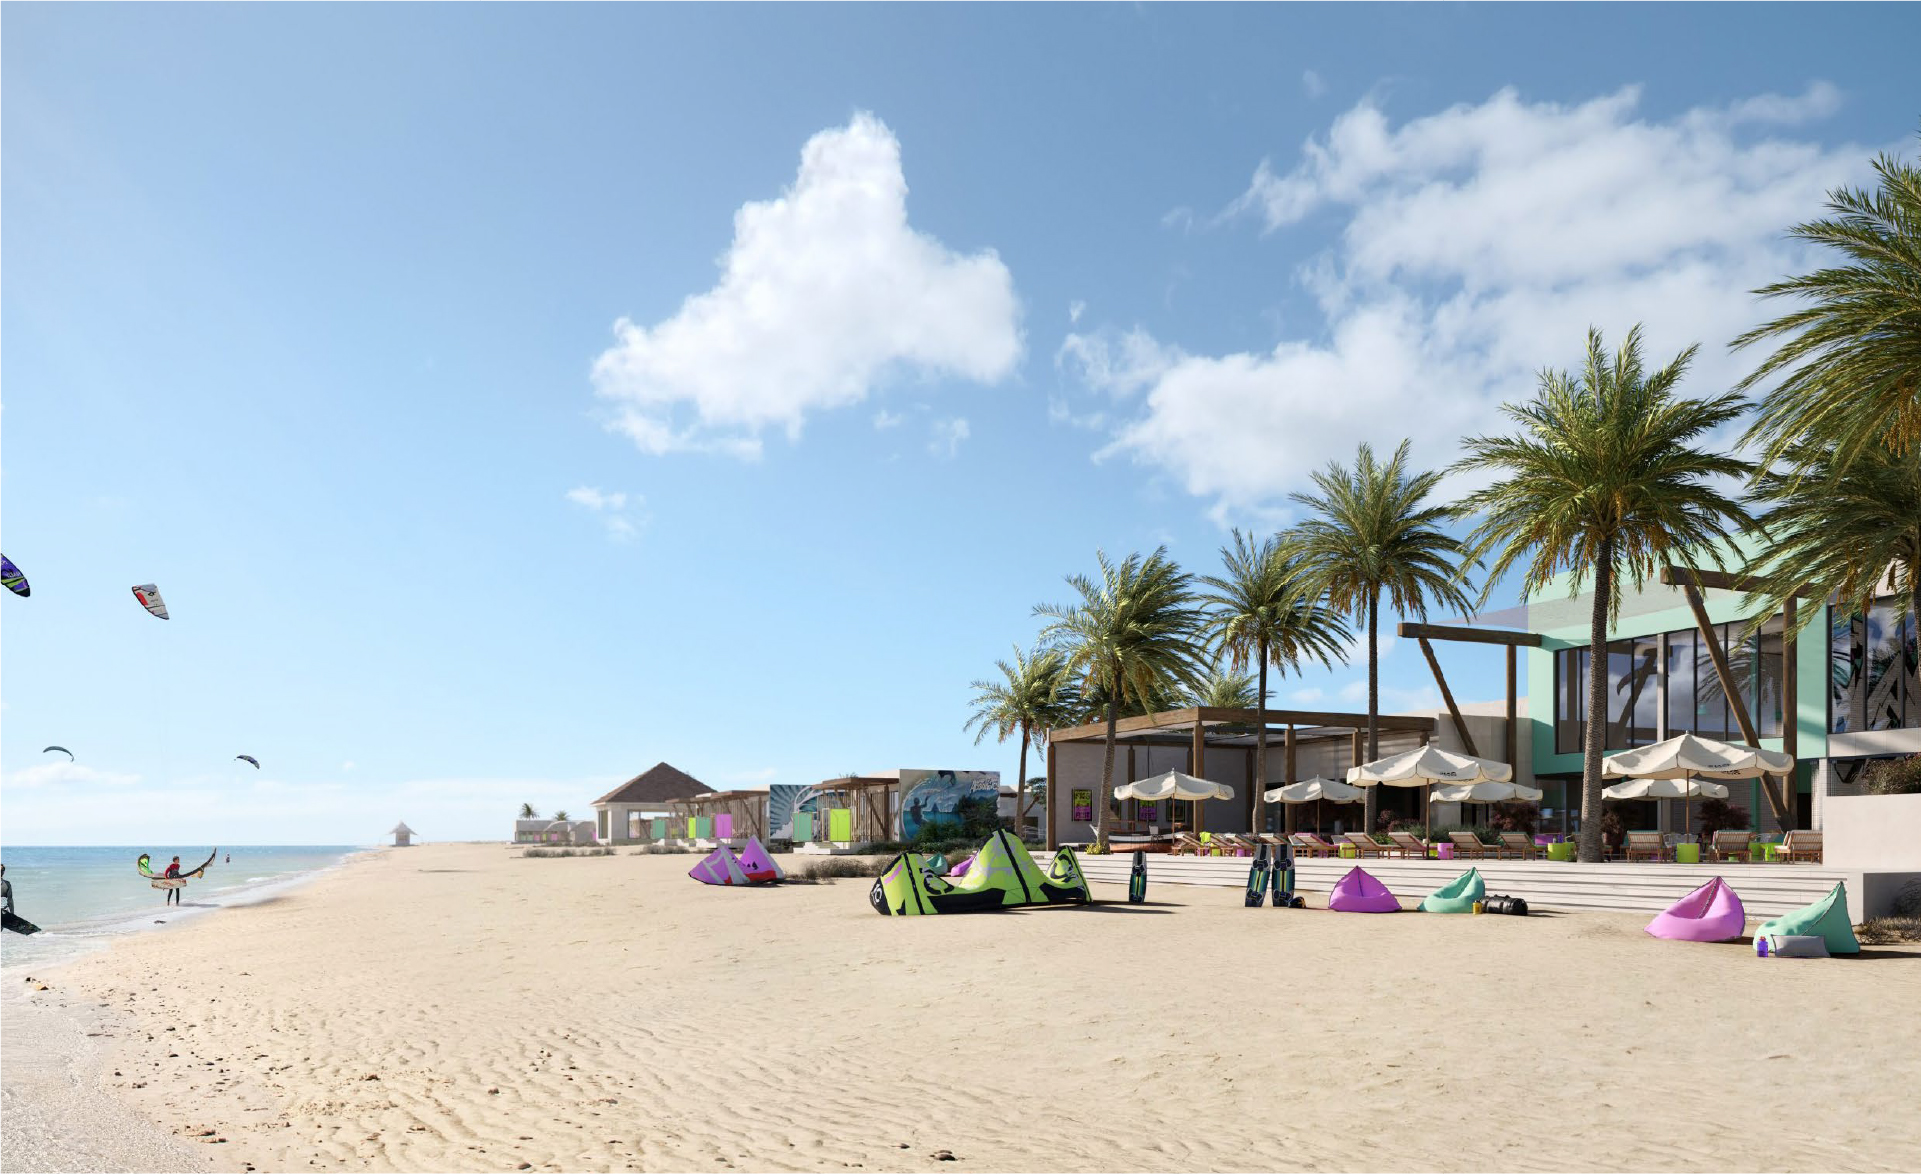 Fuwairit Kite Beach - Discover Qatar